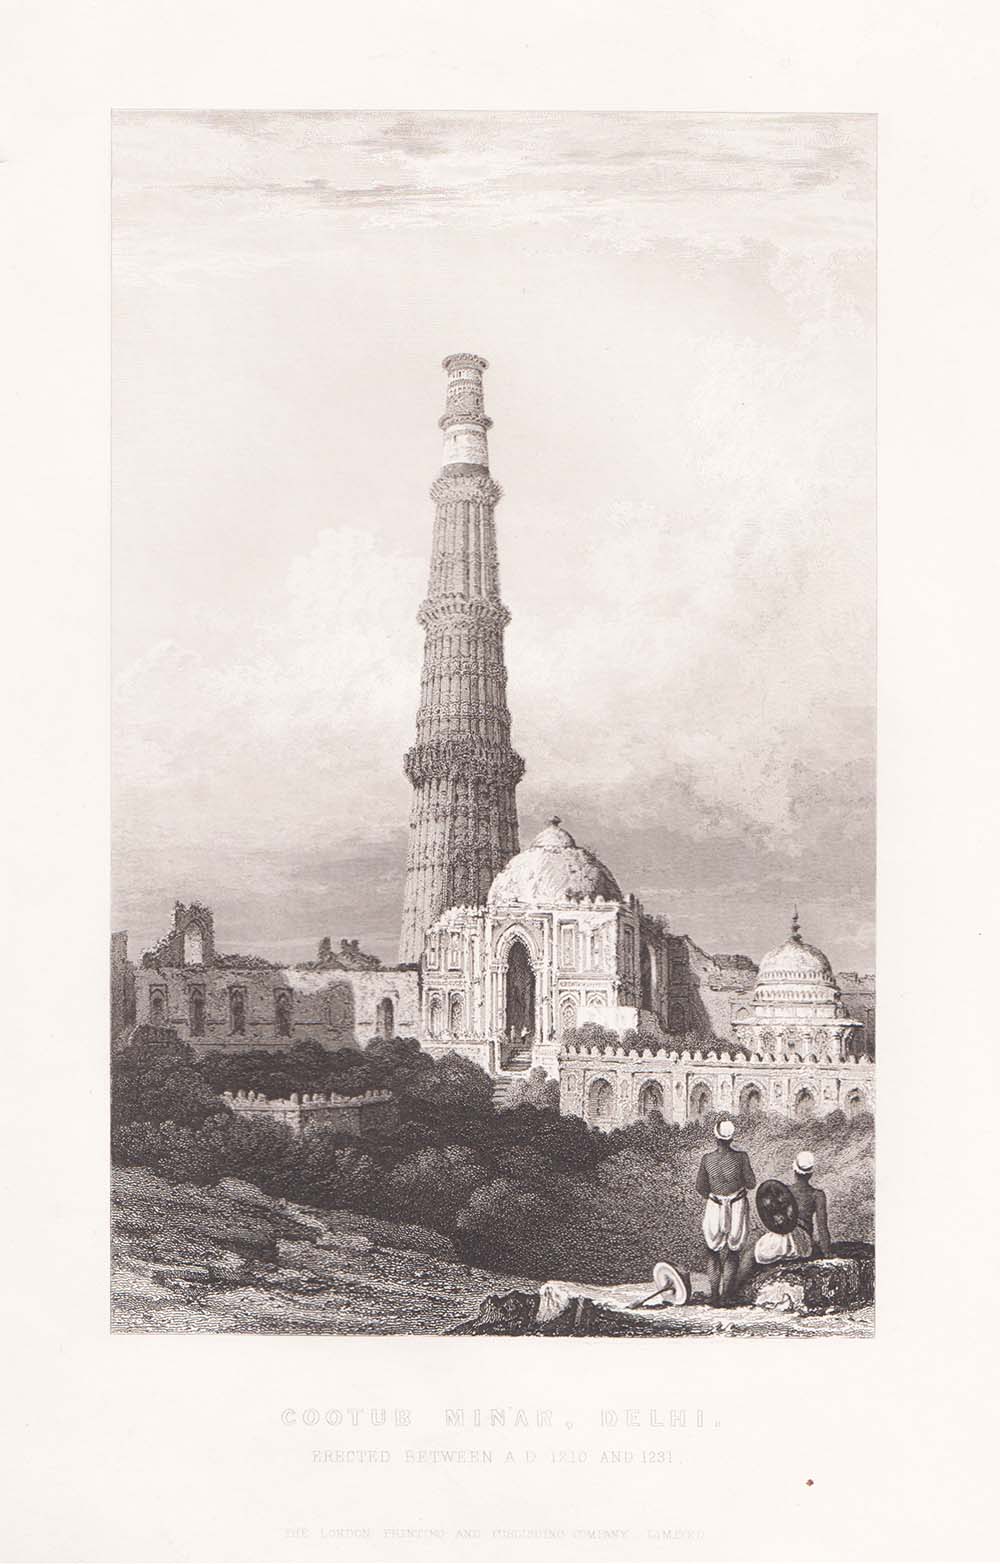 Cootub Minar, Delhi.  Erected between A.D. 1210 and 1231.